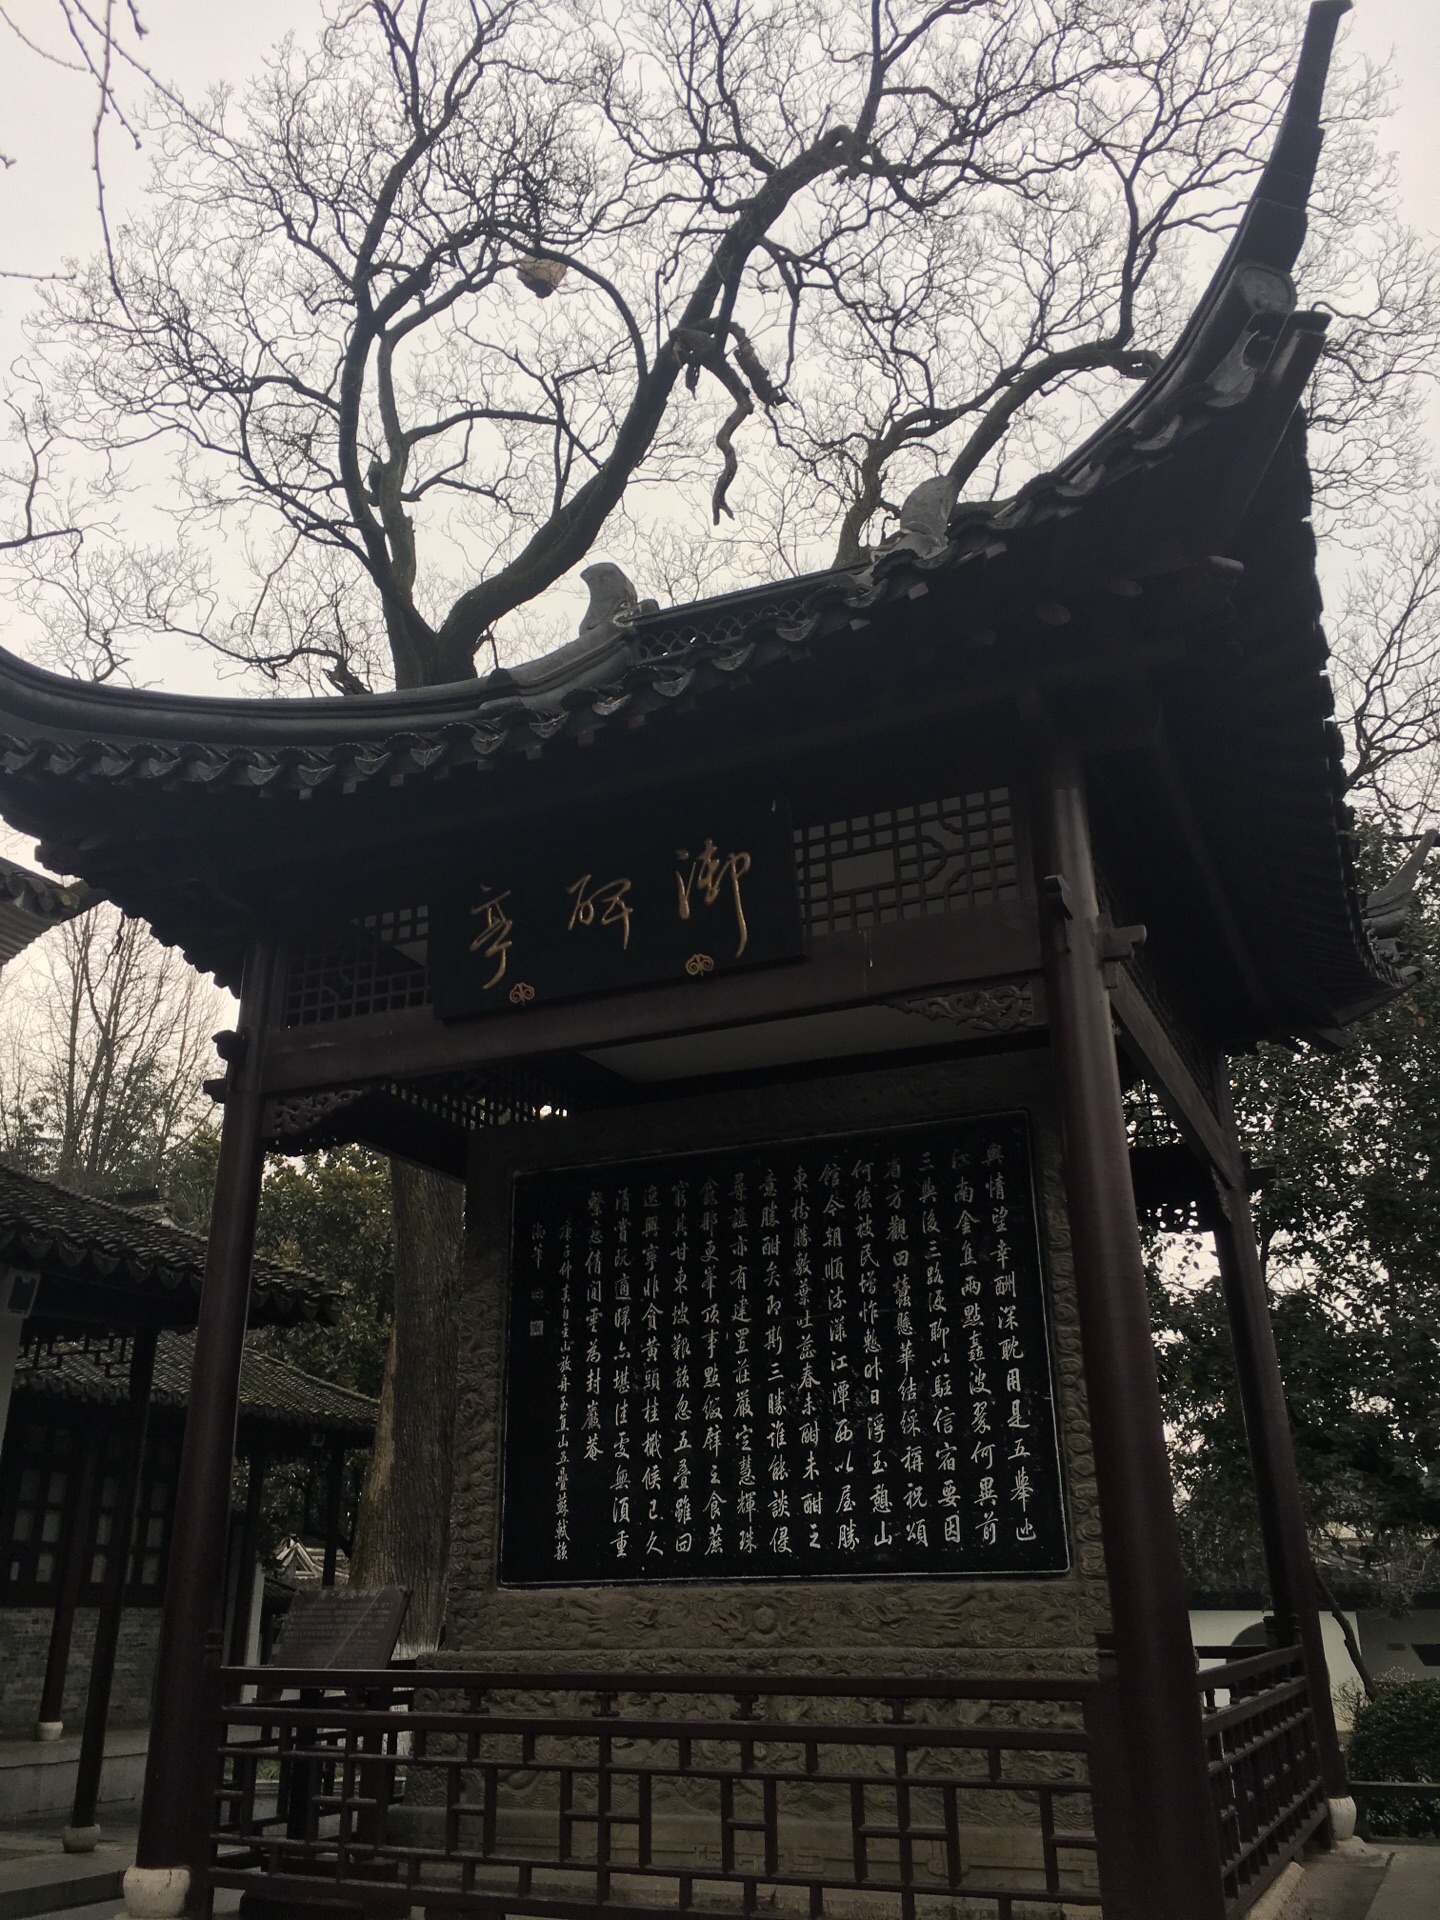 江苏镇江•焦山风景区:1800多年的定慧寺和皇家建筑风格的寺院 - 知乎